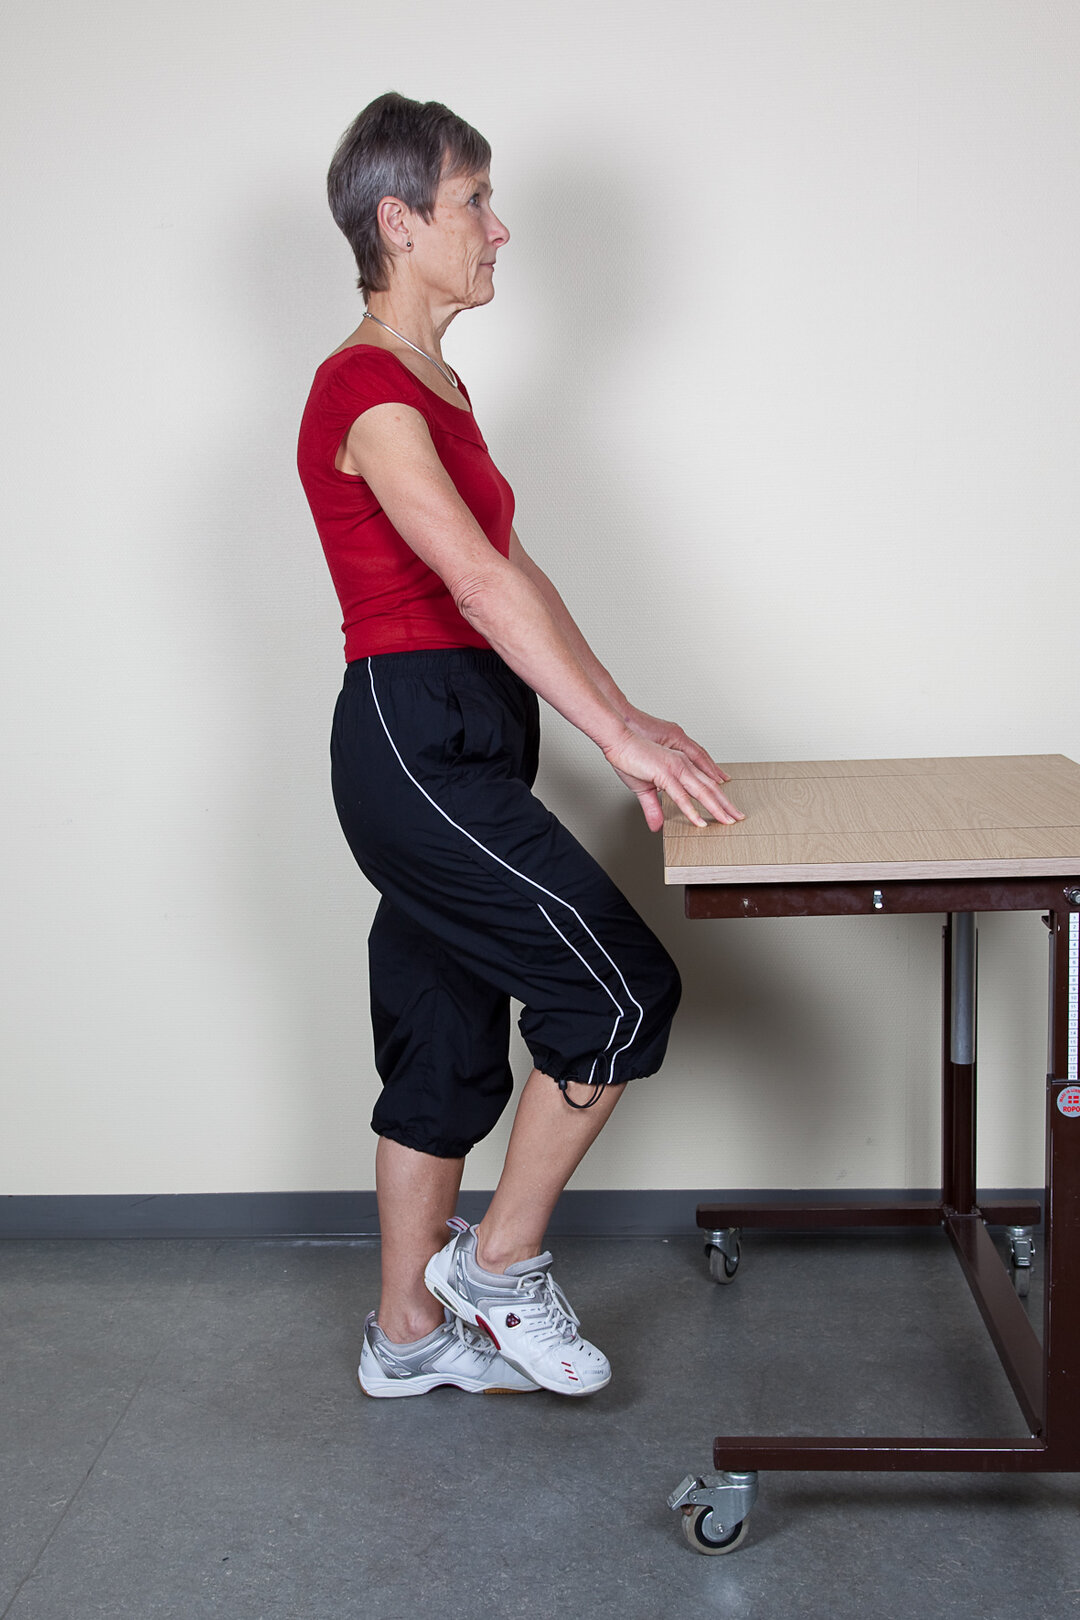  Øvelsen øger muskelstyrken på forsiden af lårene og omkring hoften.Støt dig evt. til en sengegavl eller et bord. Stå med vægten på det raske ben. Træk navlen ind. Løft det opererede ben med bøjet knæ  op mod maven, sænk det roligt igen. Gentag øvelsen med det andet ben. Husk du kun må løfte låret til vandret.